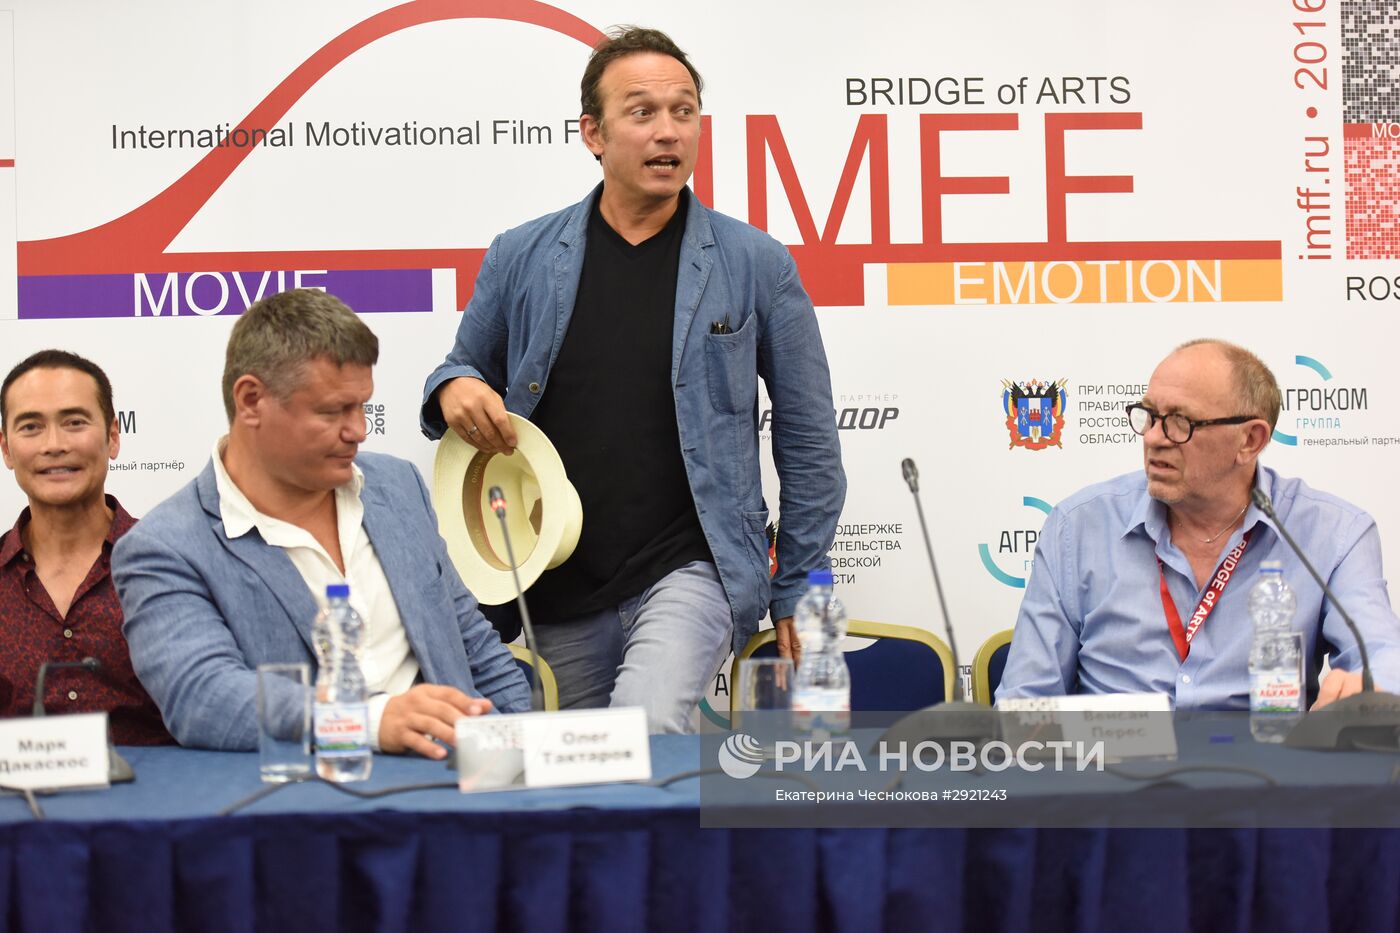 Международный фестиваль мотивационного кино Bridge of arts